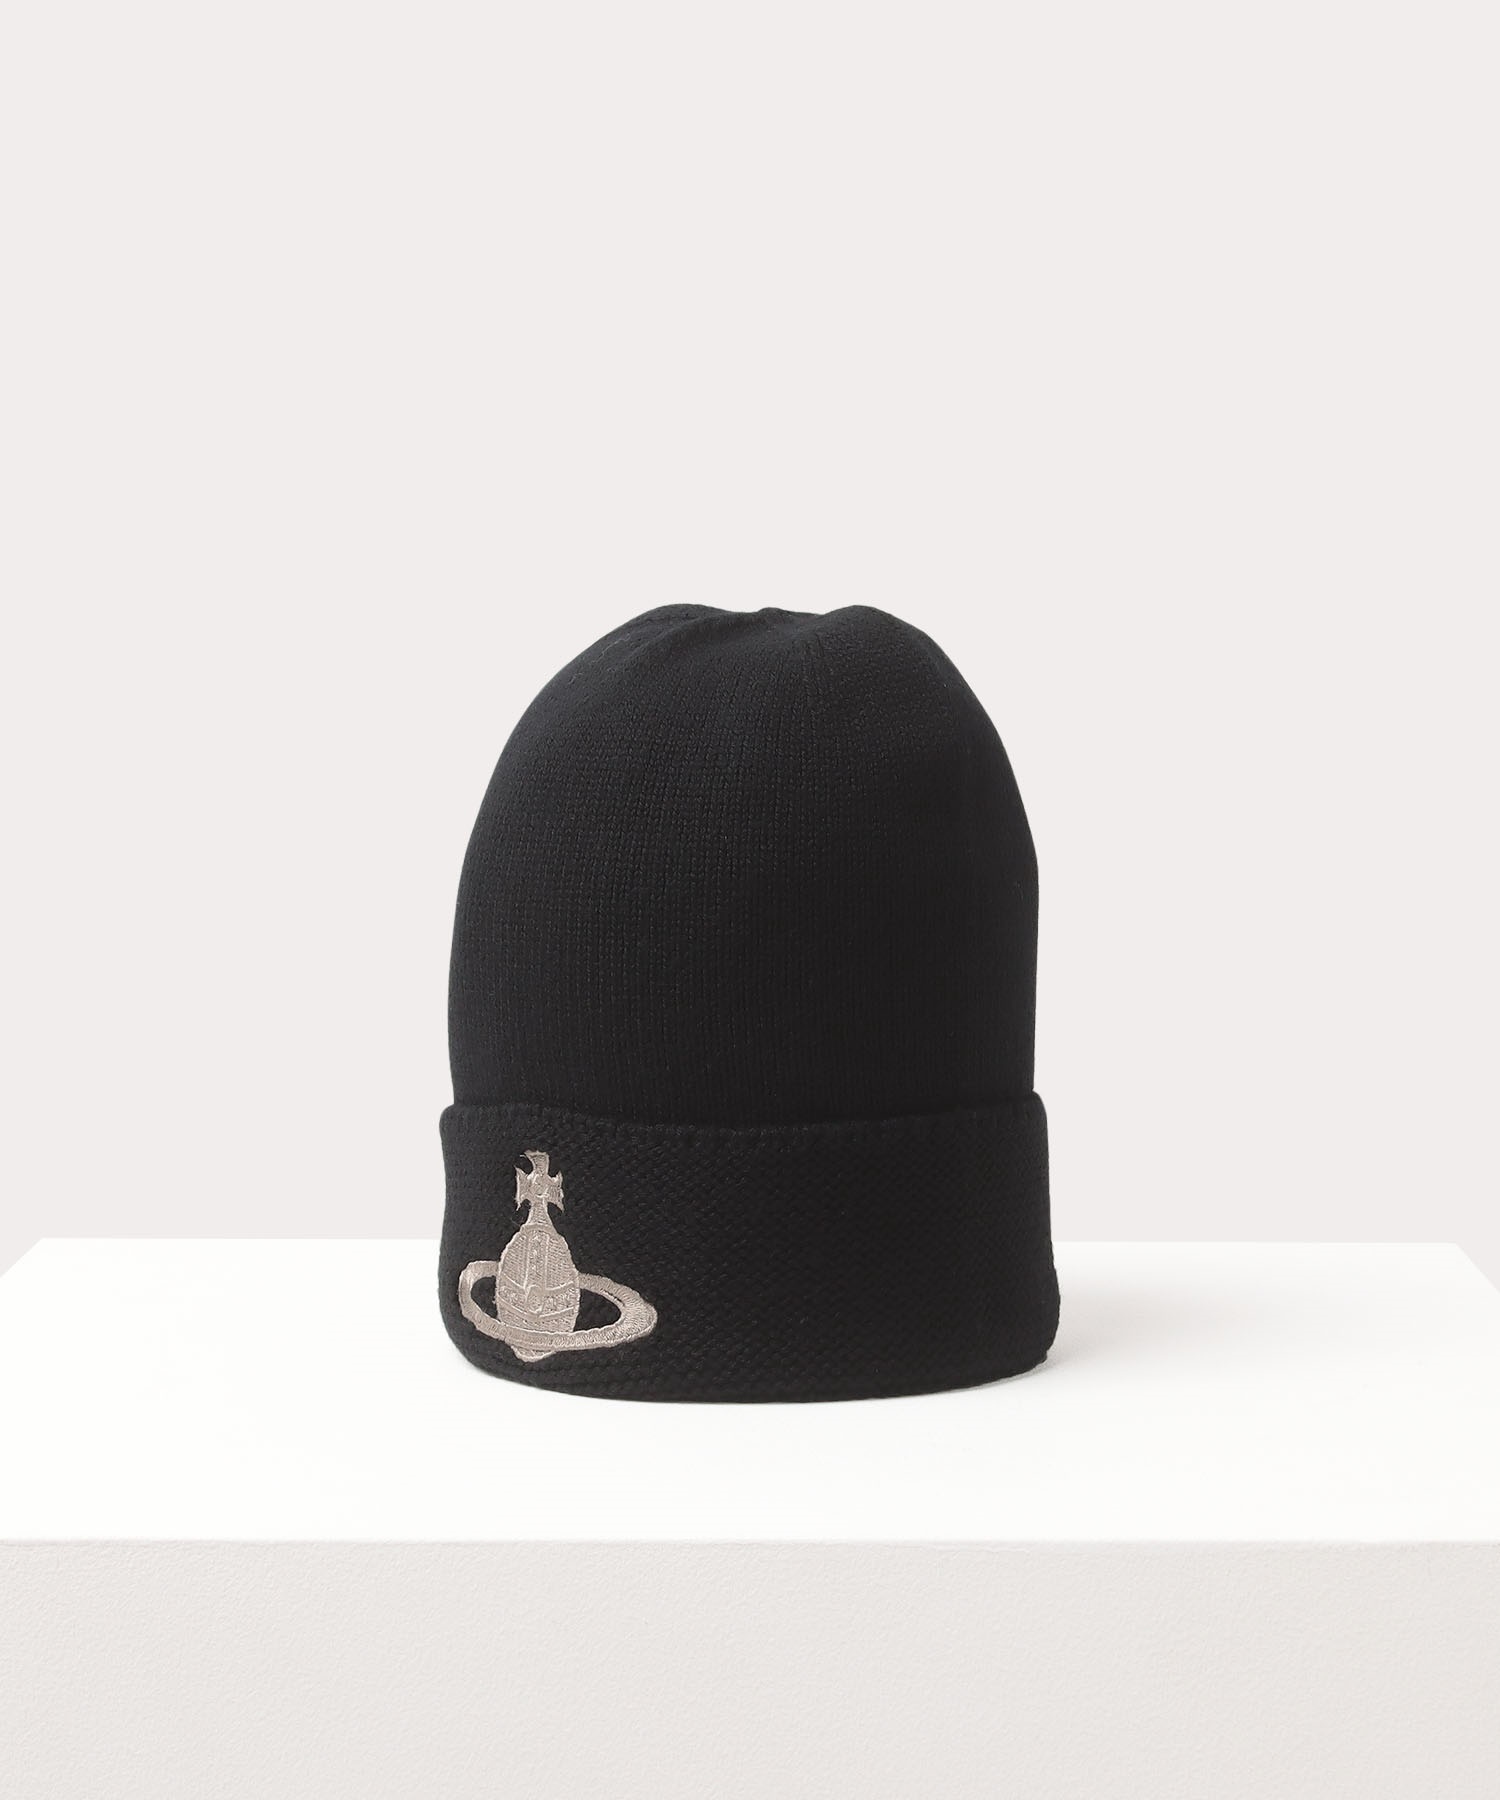 Vivienne Westwood Man キャップ グレー×ブラック F帽子 - キャップ